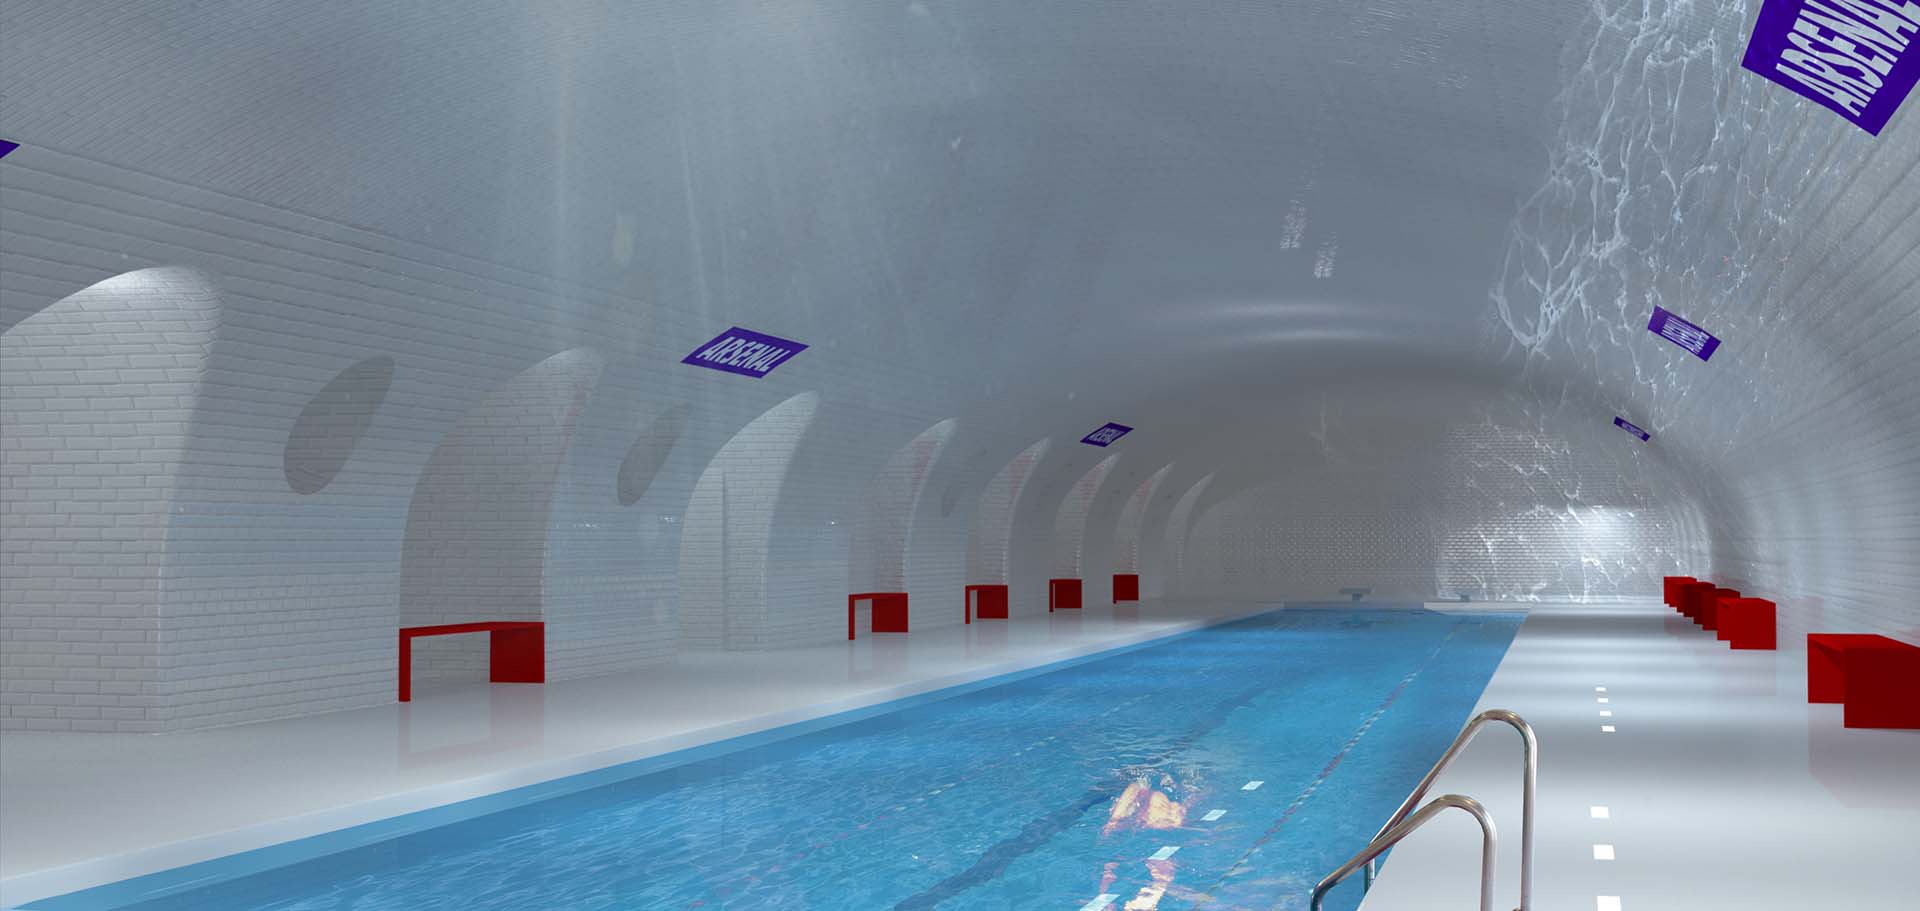 Uma antiga estação do metrô de Paris se transforma em uma piscina pública - esta é uma das propostas inovadora de um escritório de arquitetura francês